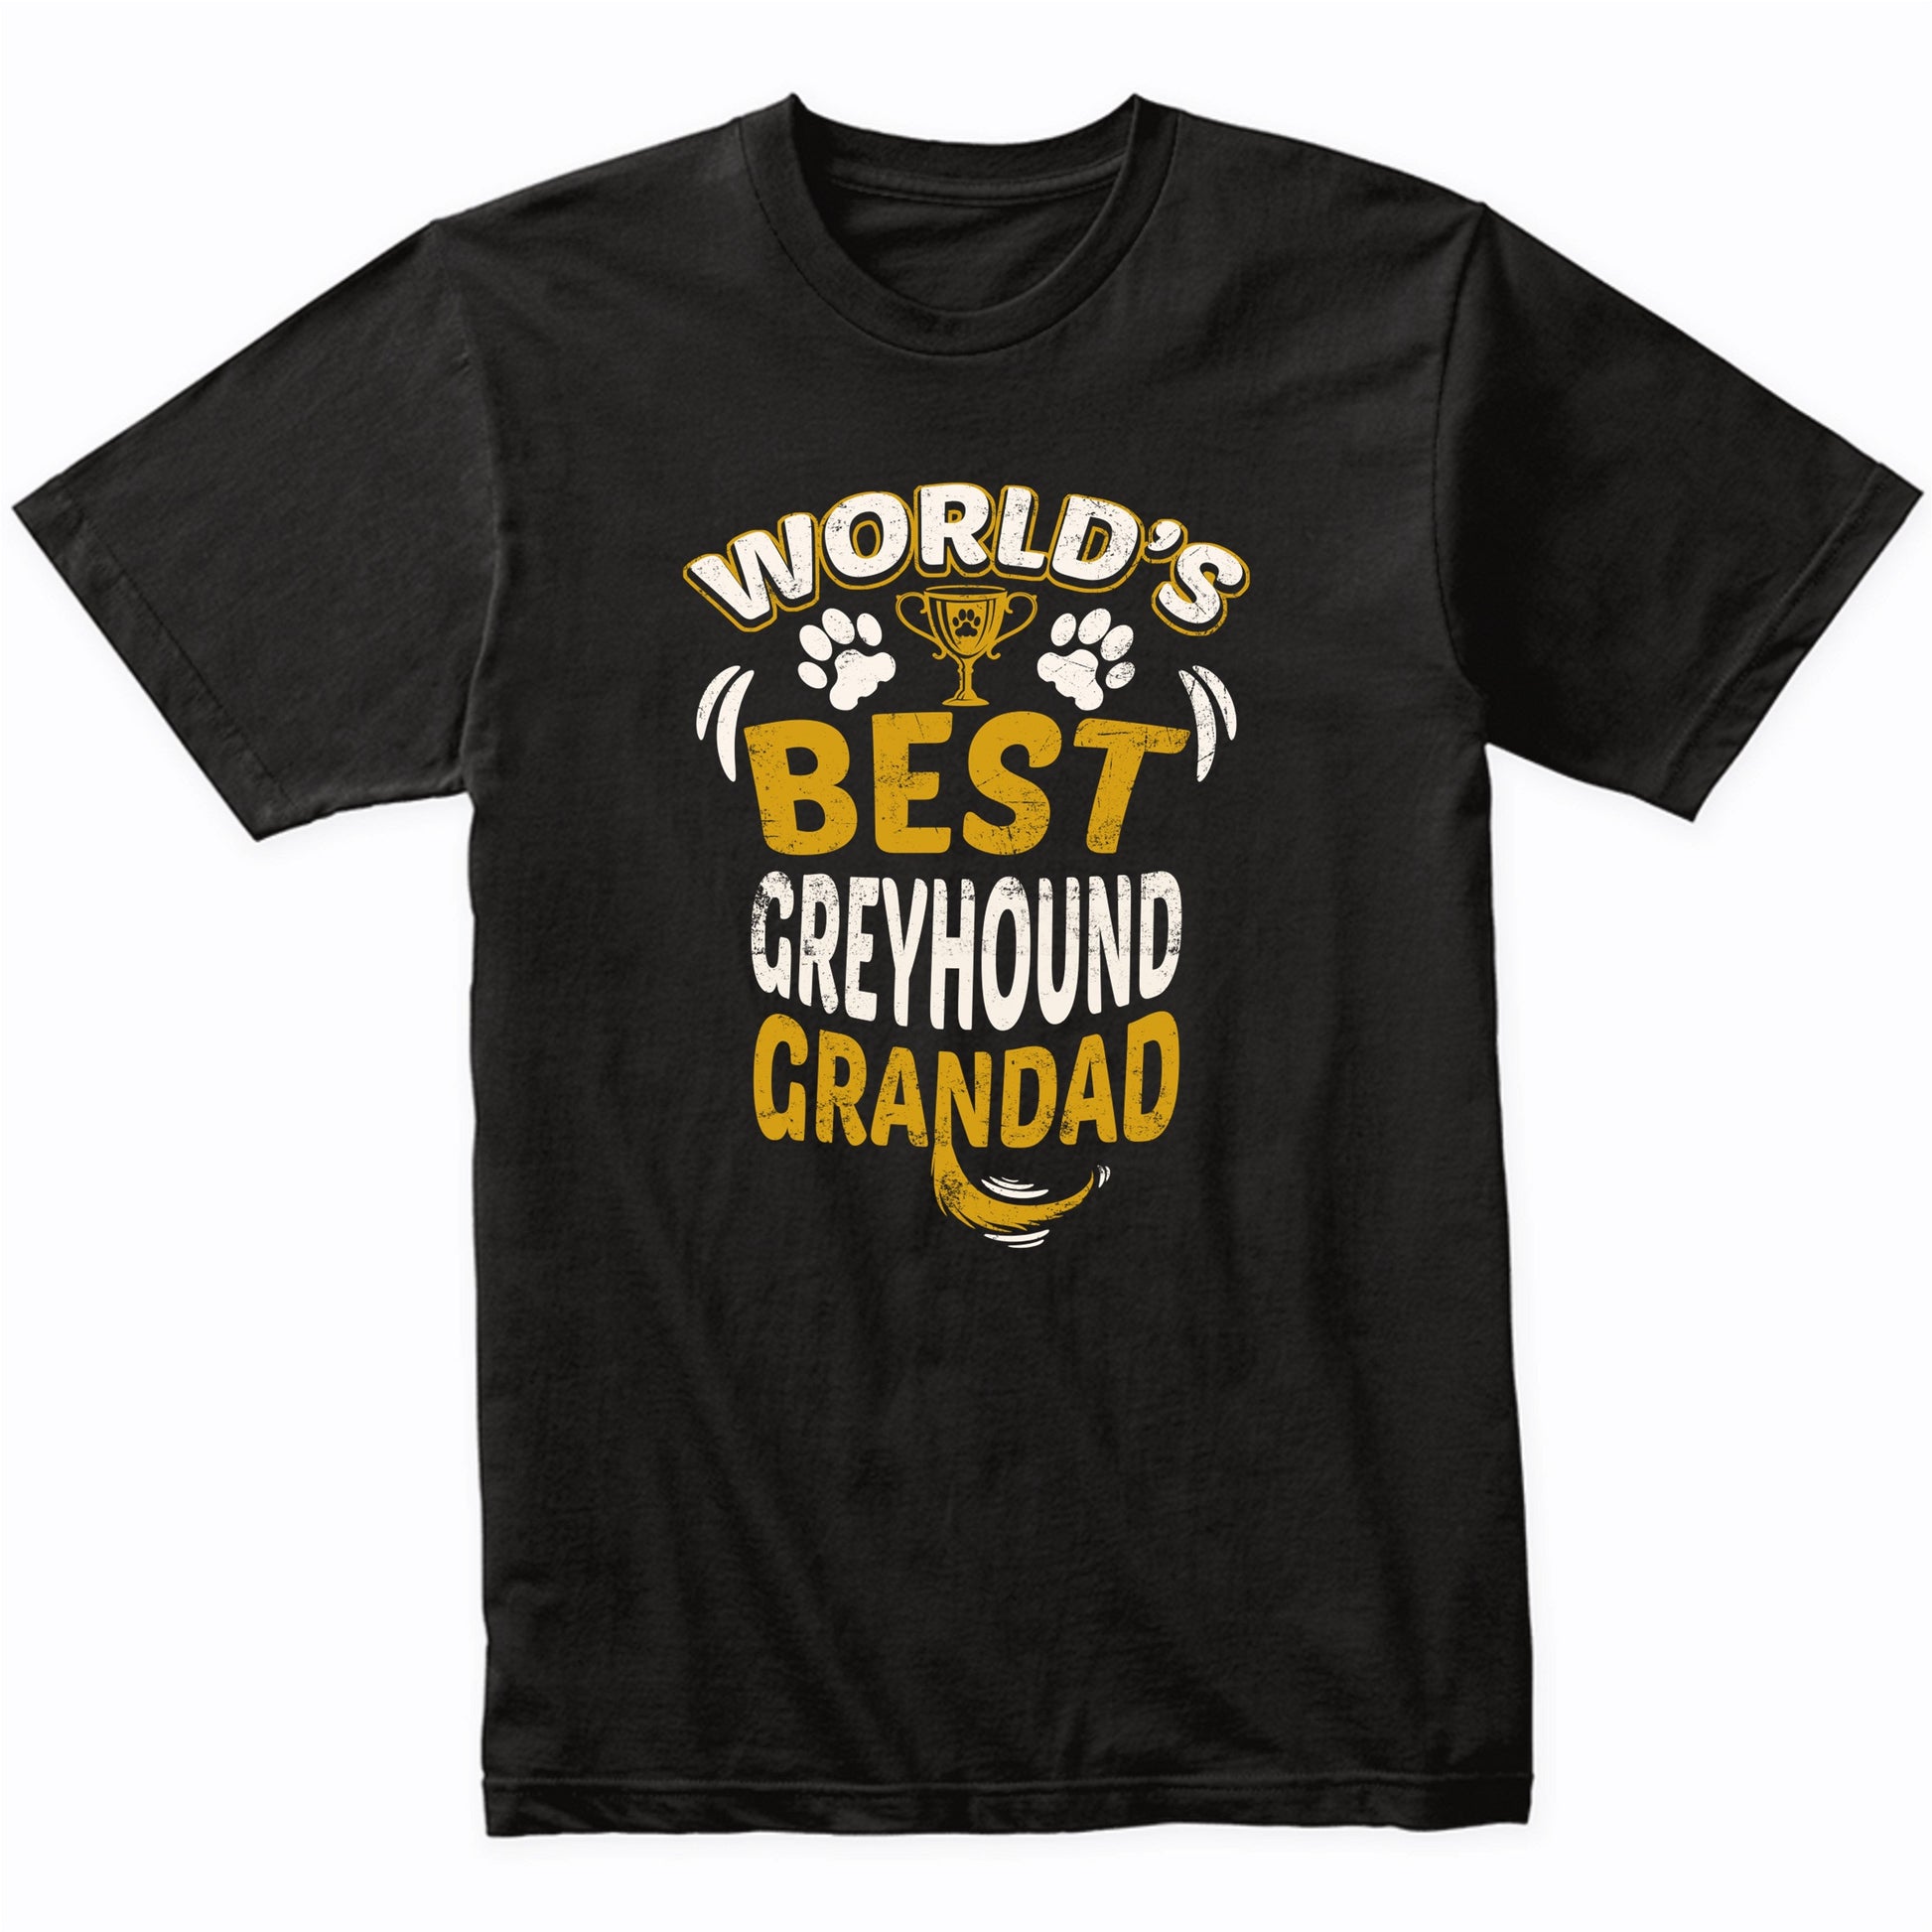 World's Best Greyhound Grandad Graphic T-Shirt